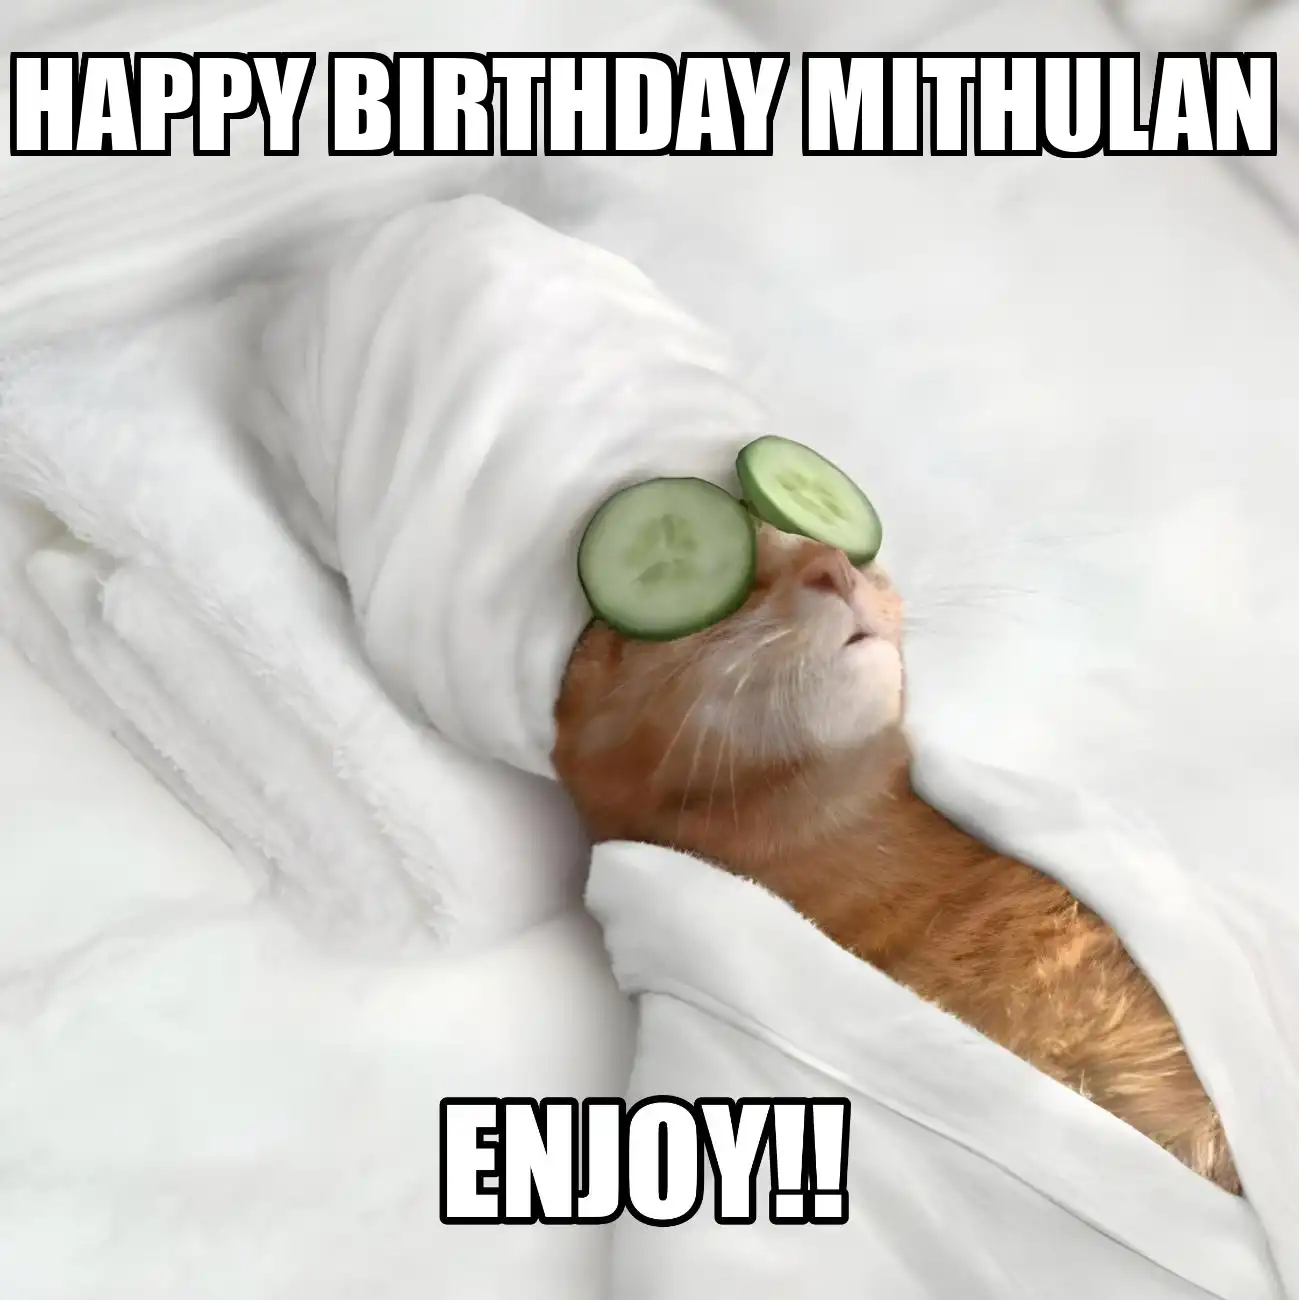 Happy Birthday Mithulan Enjoy Cat Meme